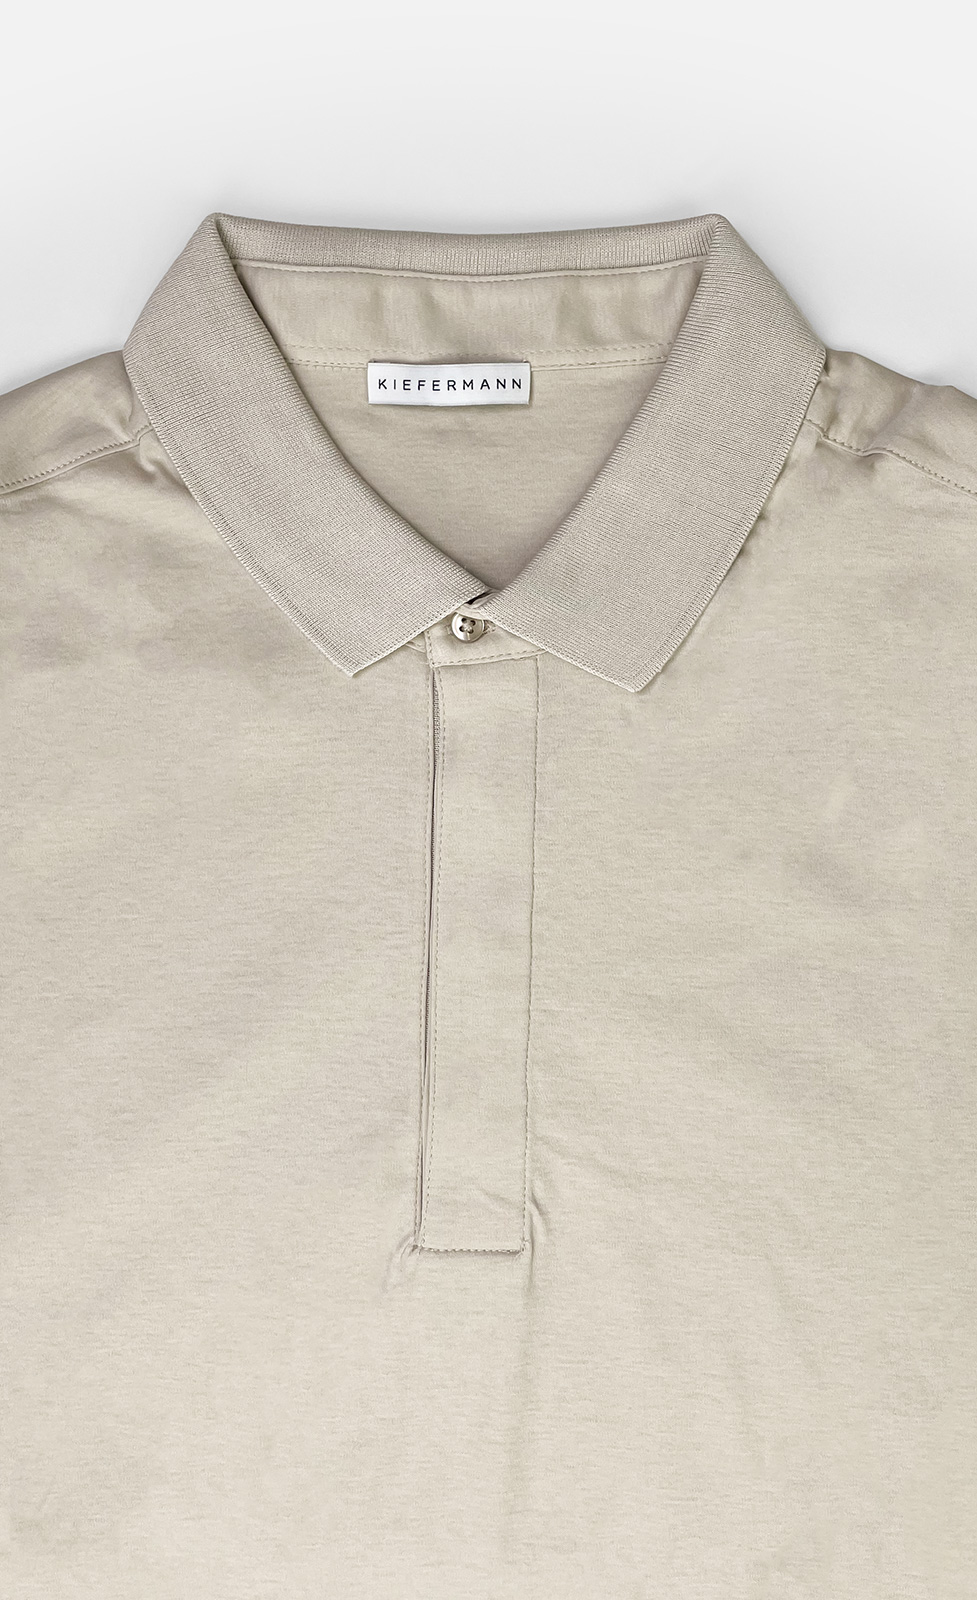 Wilson - Poloshirt aus merzerisierter Baumwolle